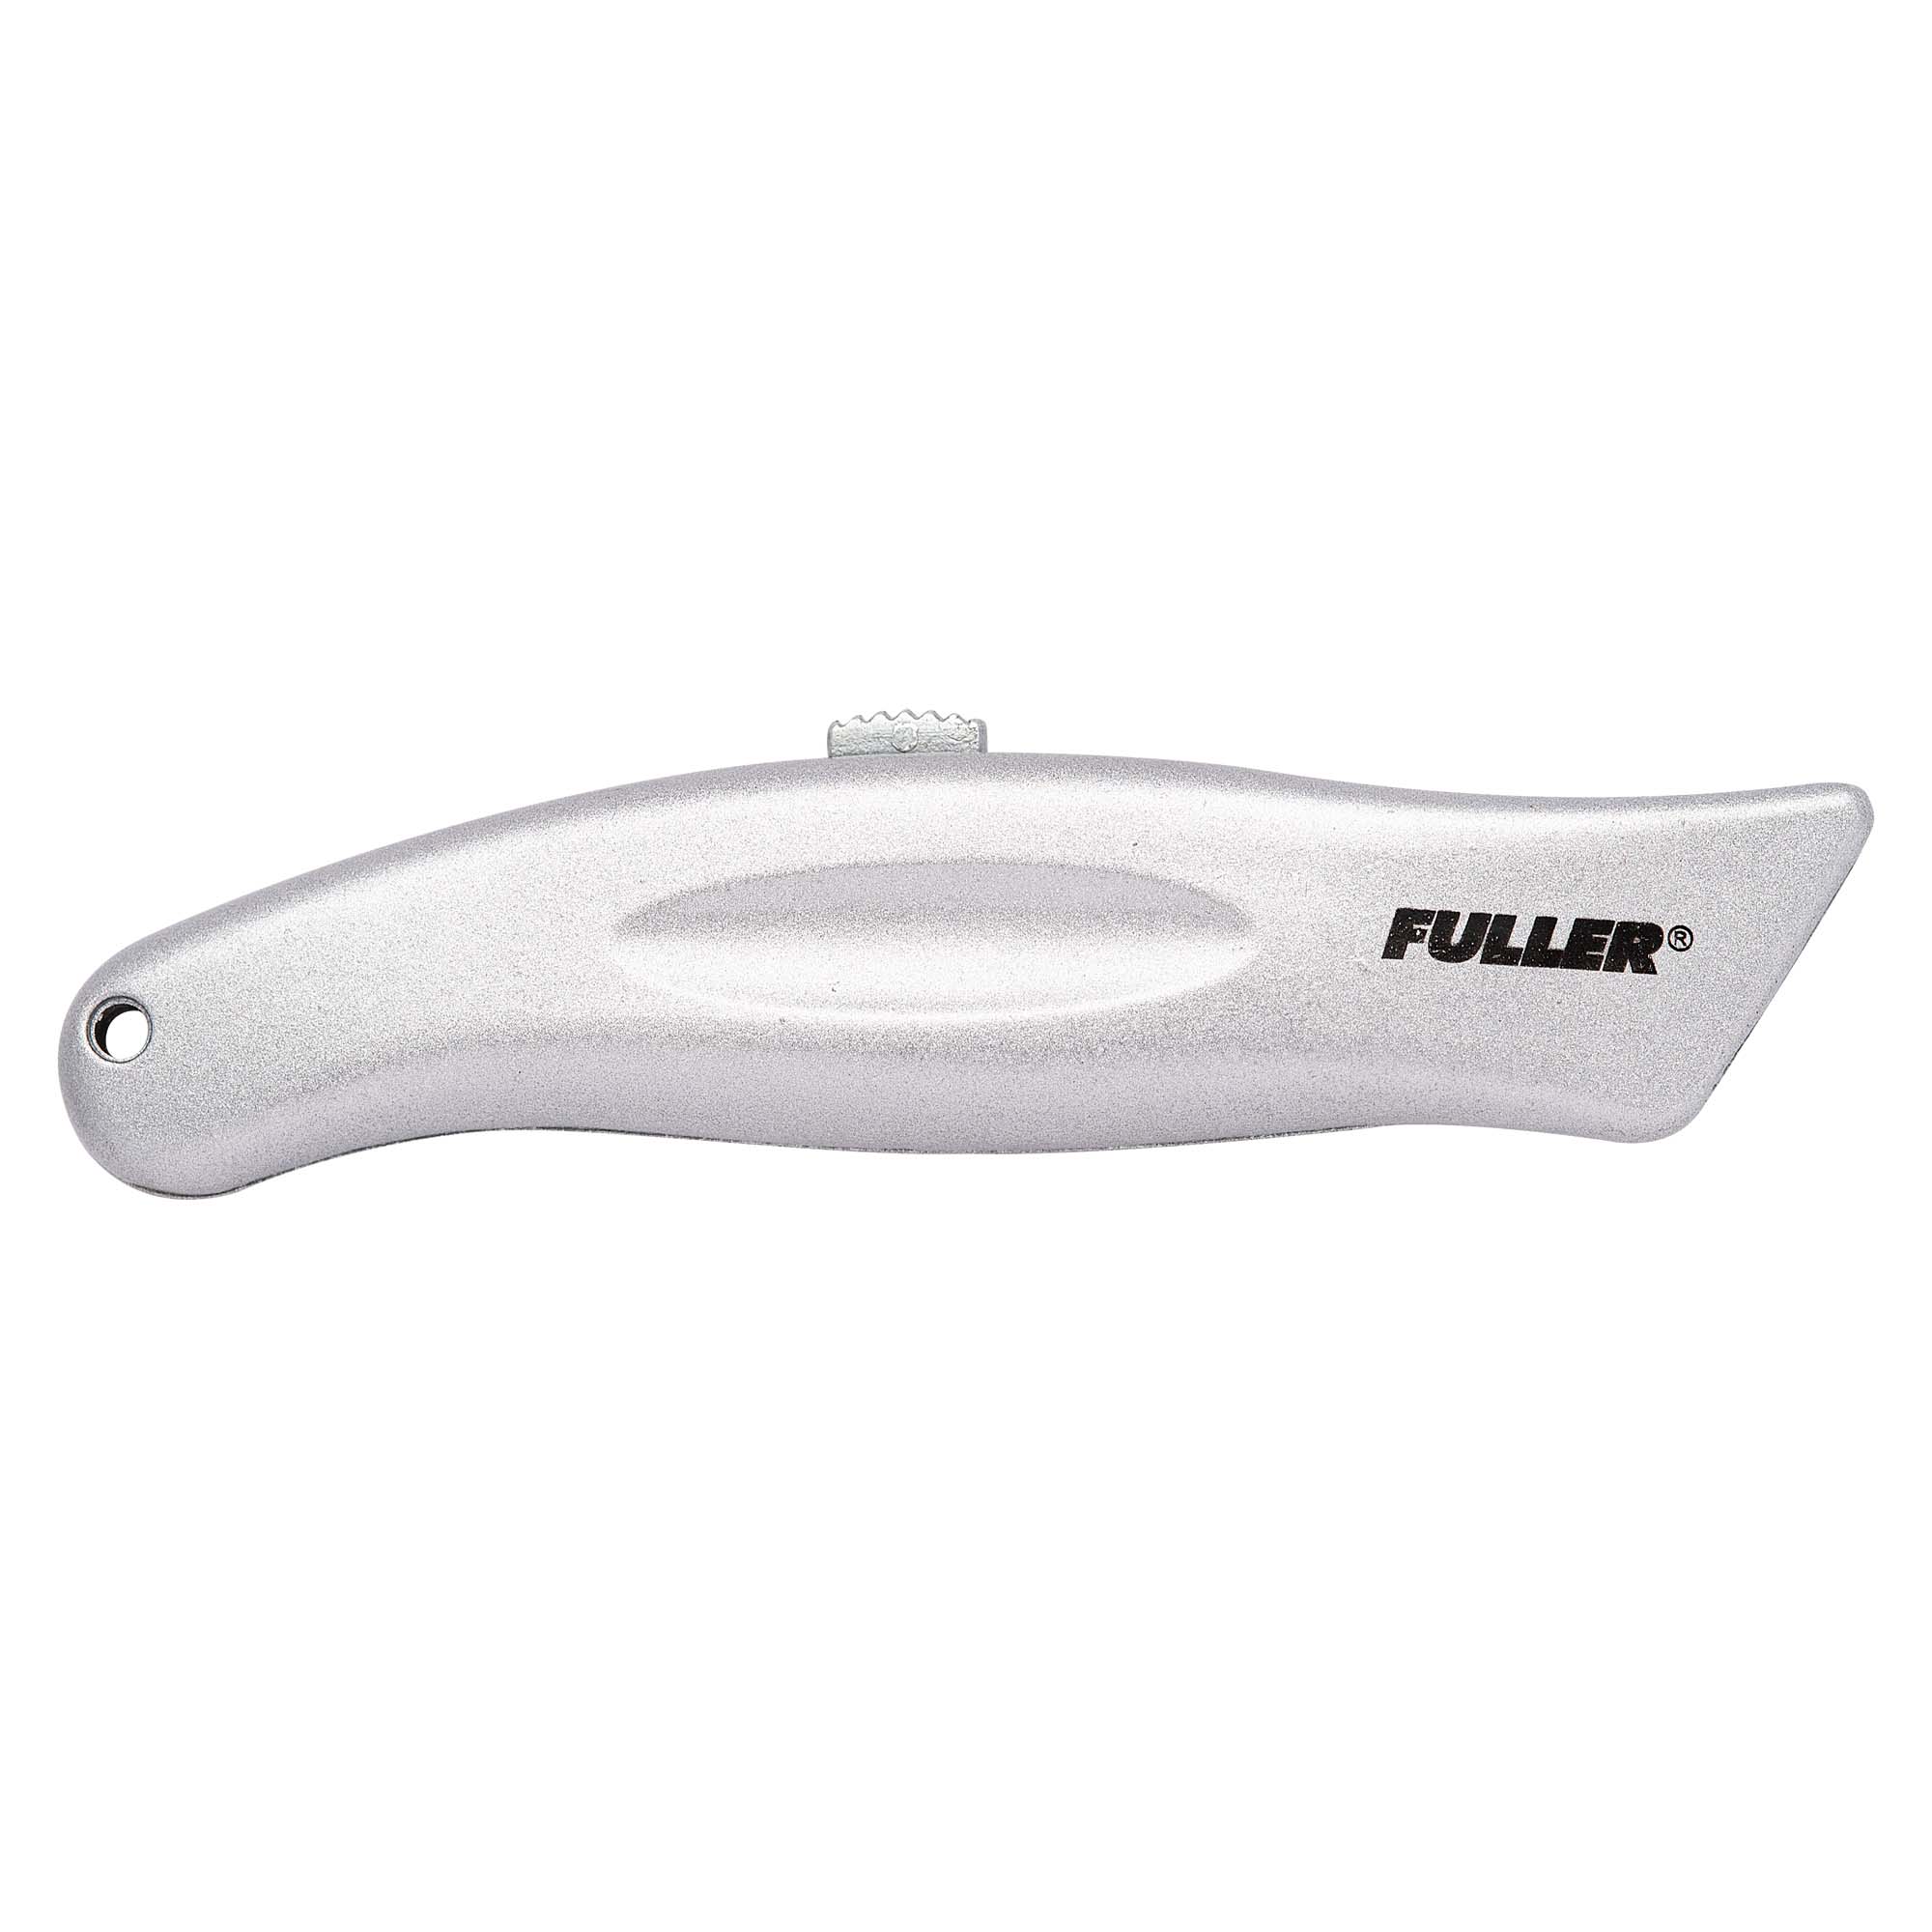 ! UTILITY KNIFE FULLER 305-0045